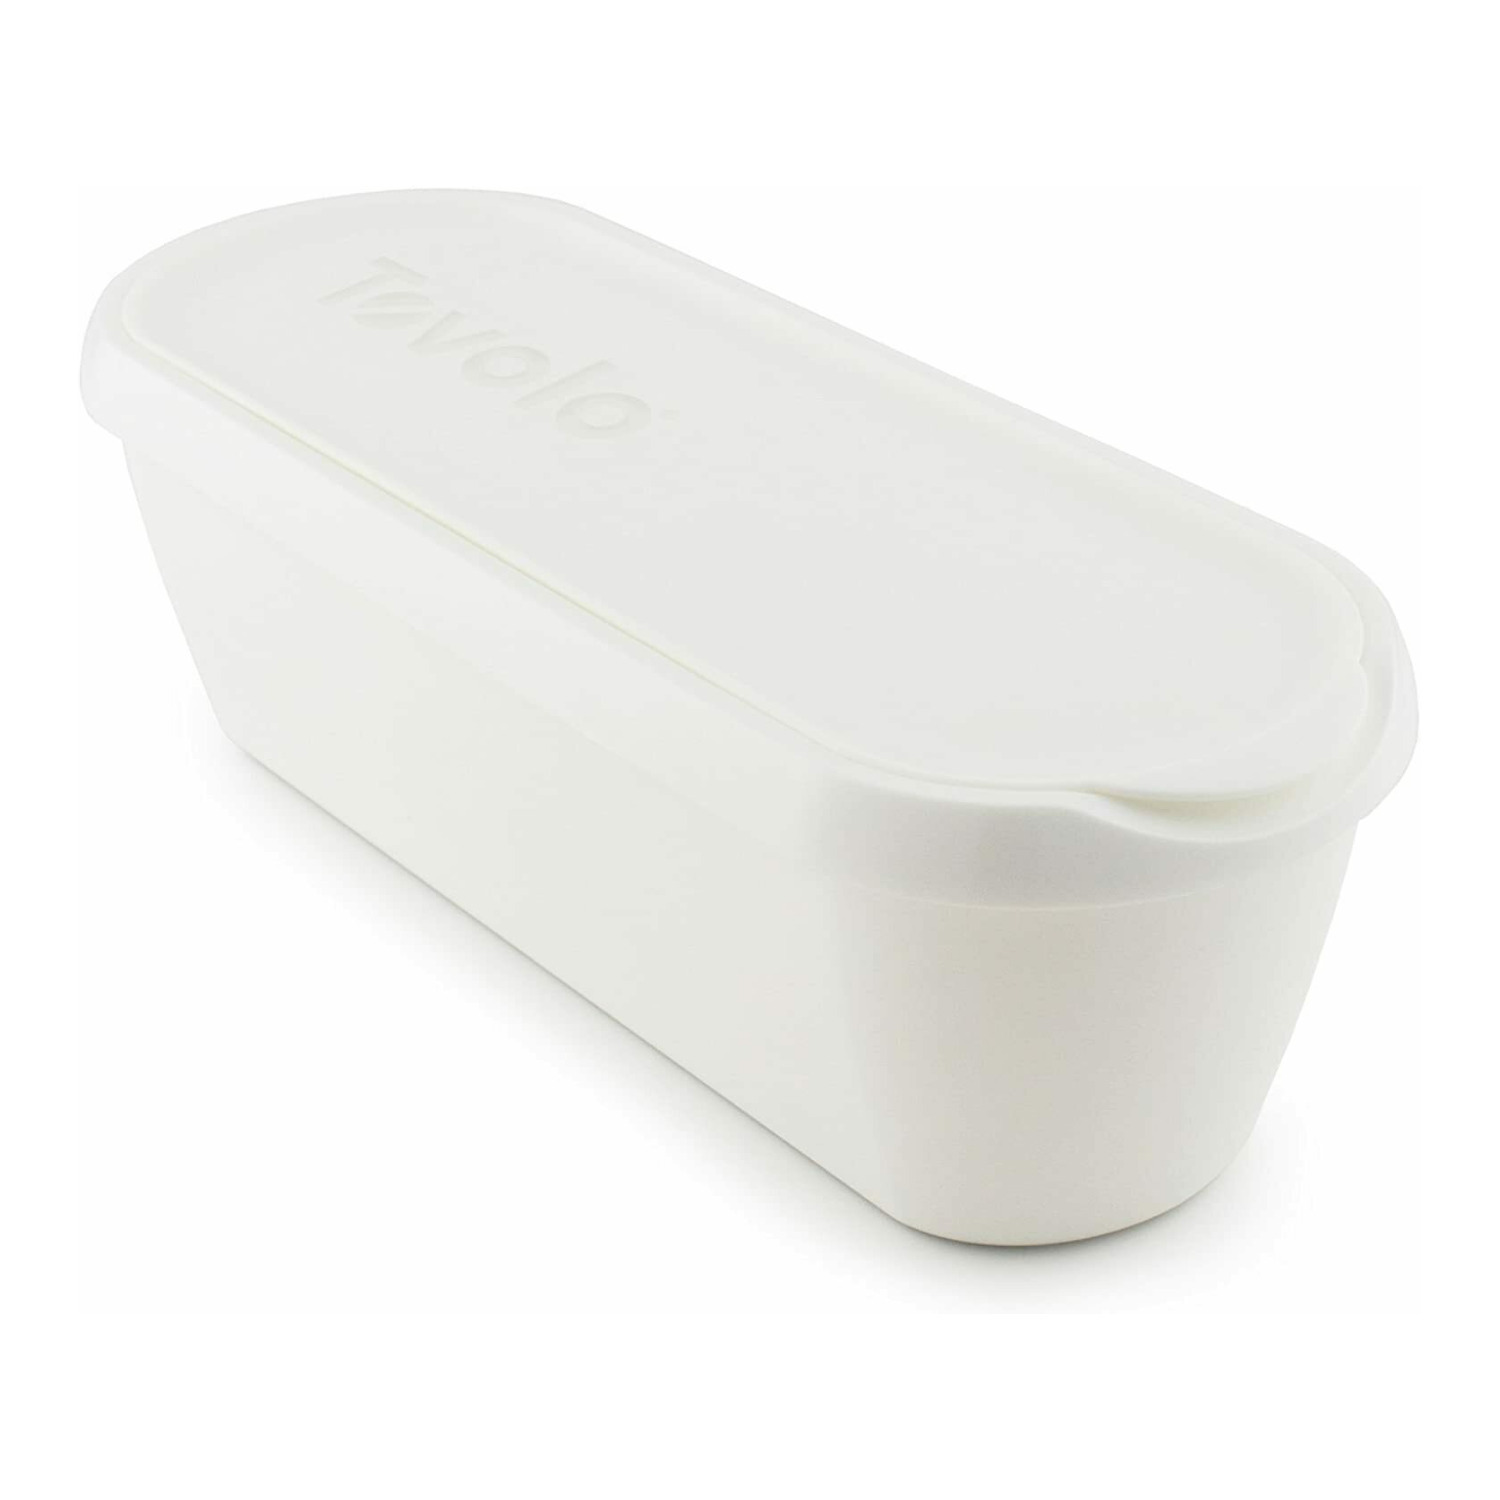 Tovolo Glide-A-Scoop, Non-Slip Base, Insulated Ice Cream Tub, 2.5 Quart, White